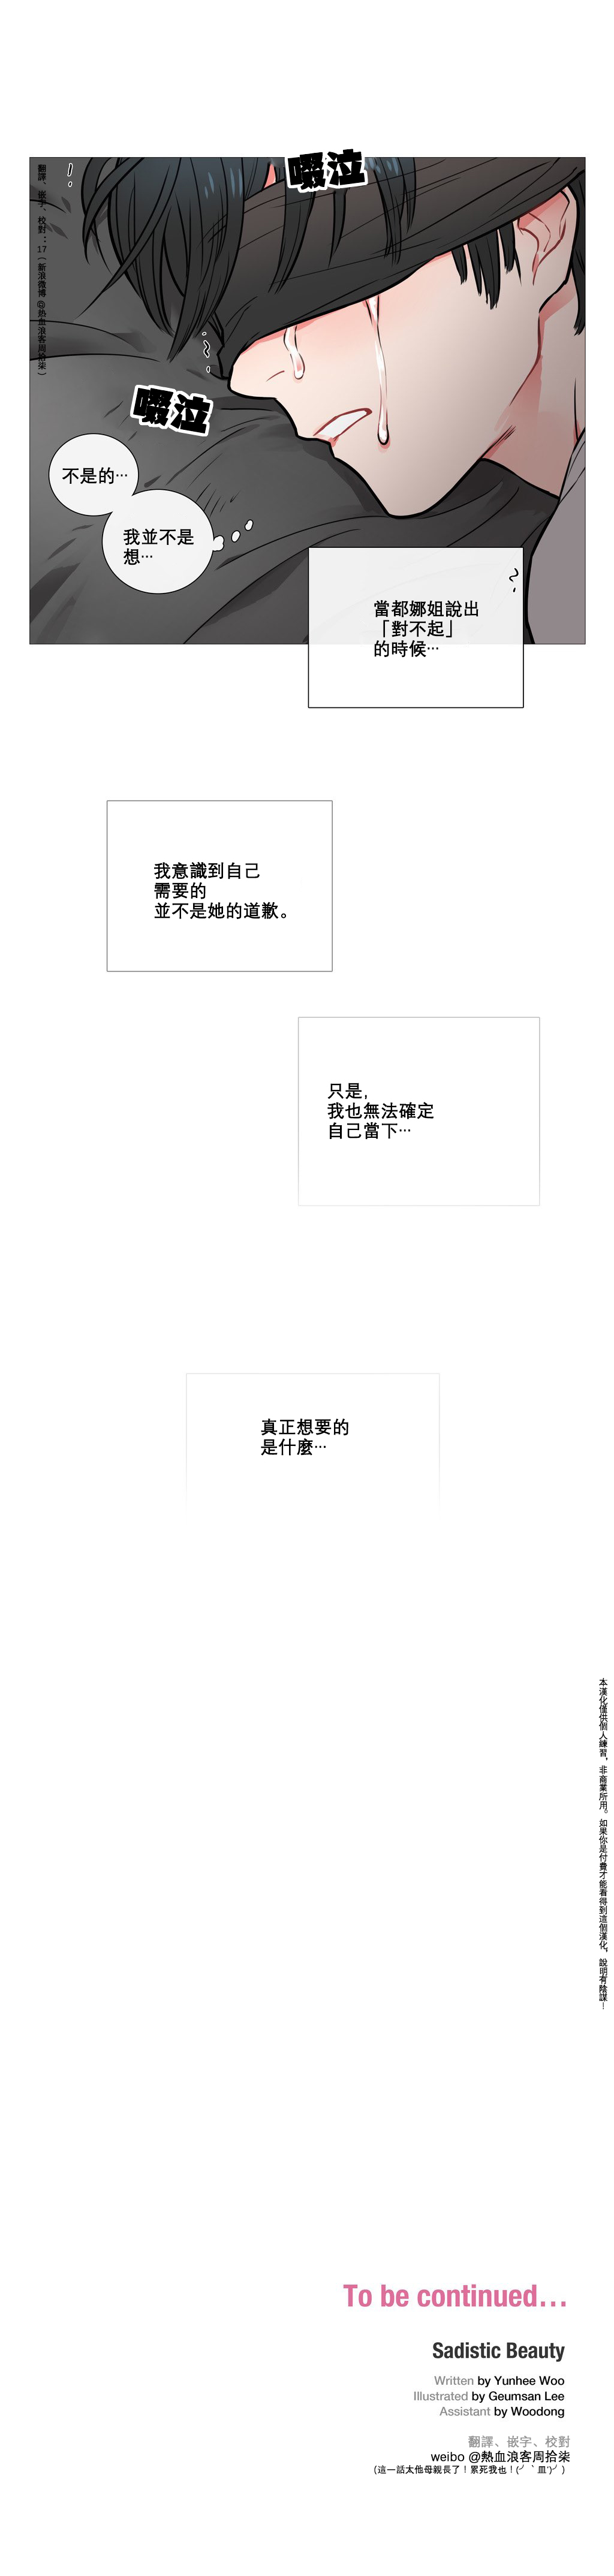 【ジンシャン】サディスティックビューティーCh.1-22【チャイニーズ】【17汉化】